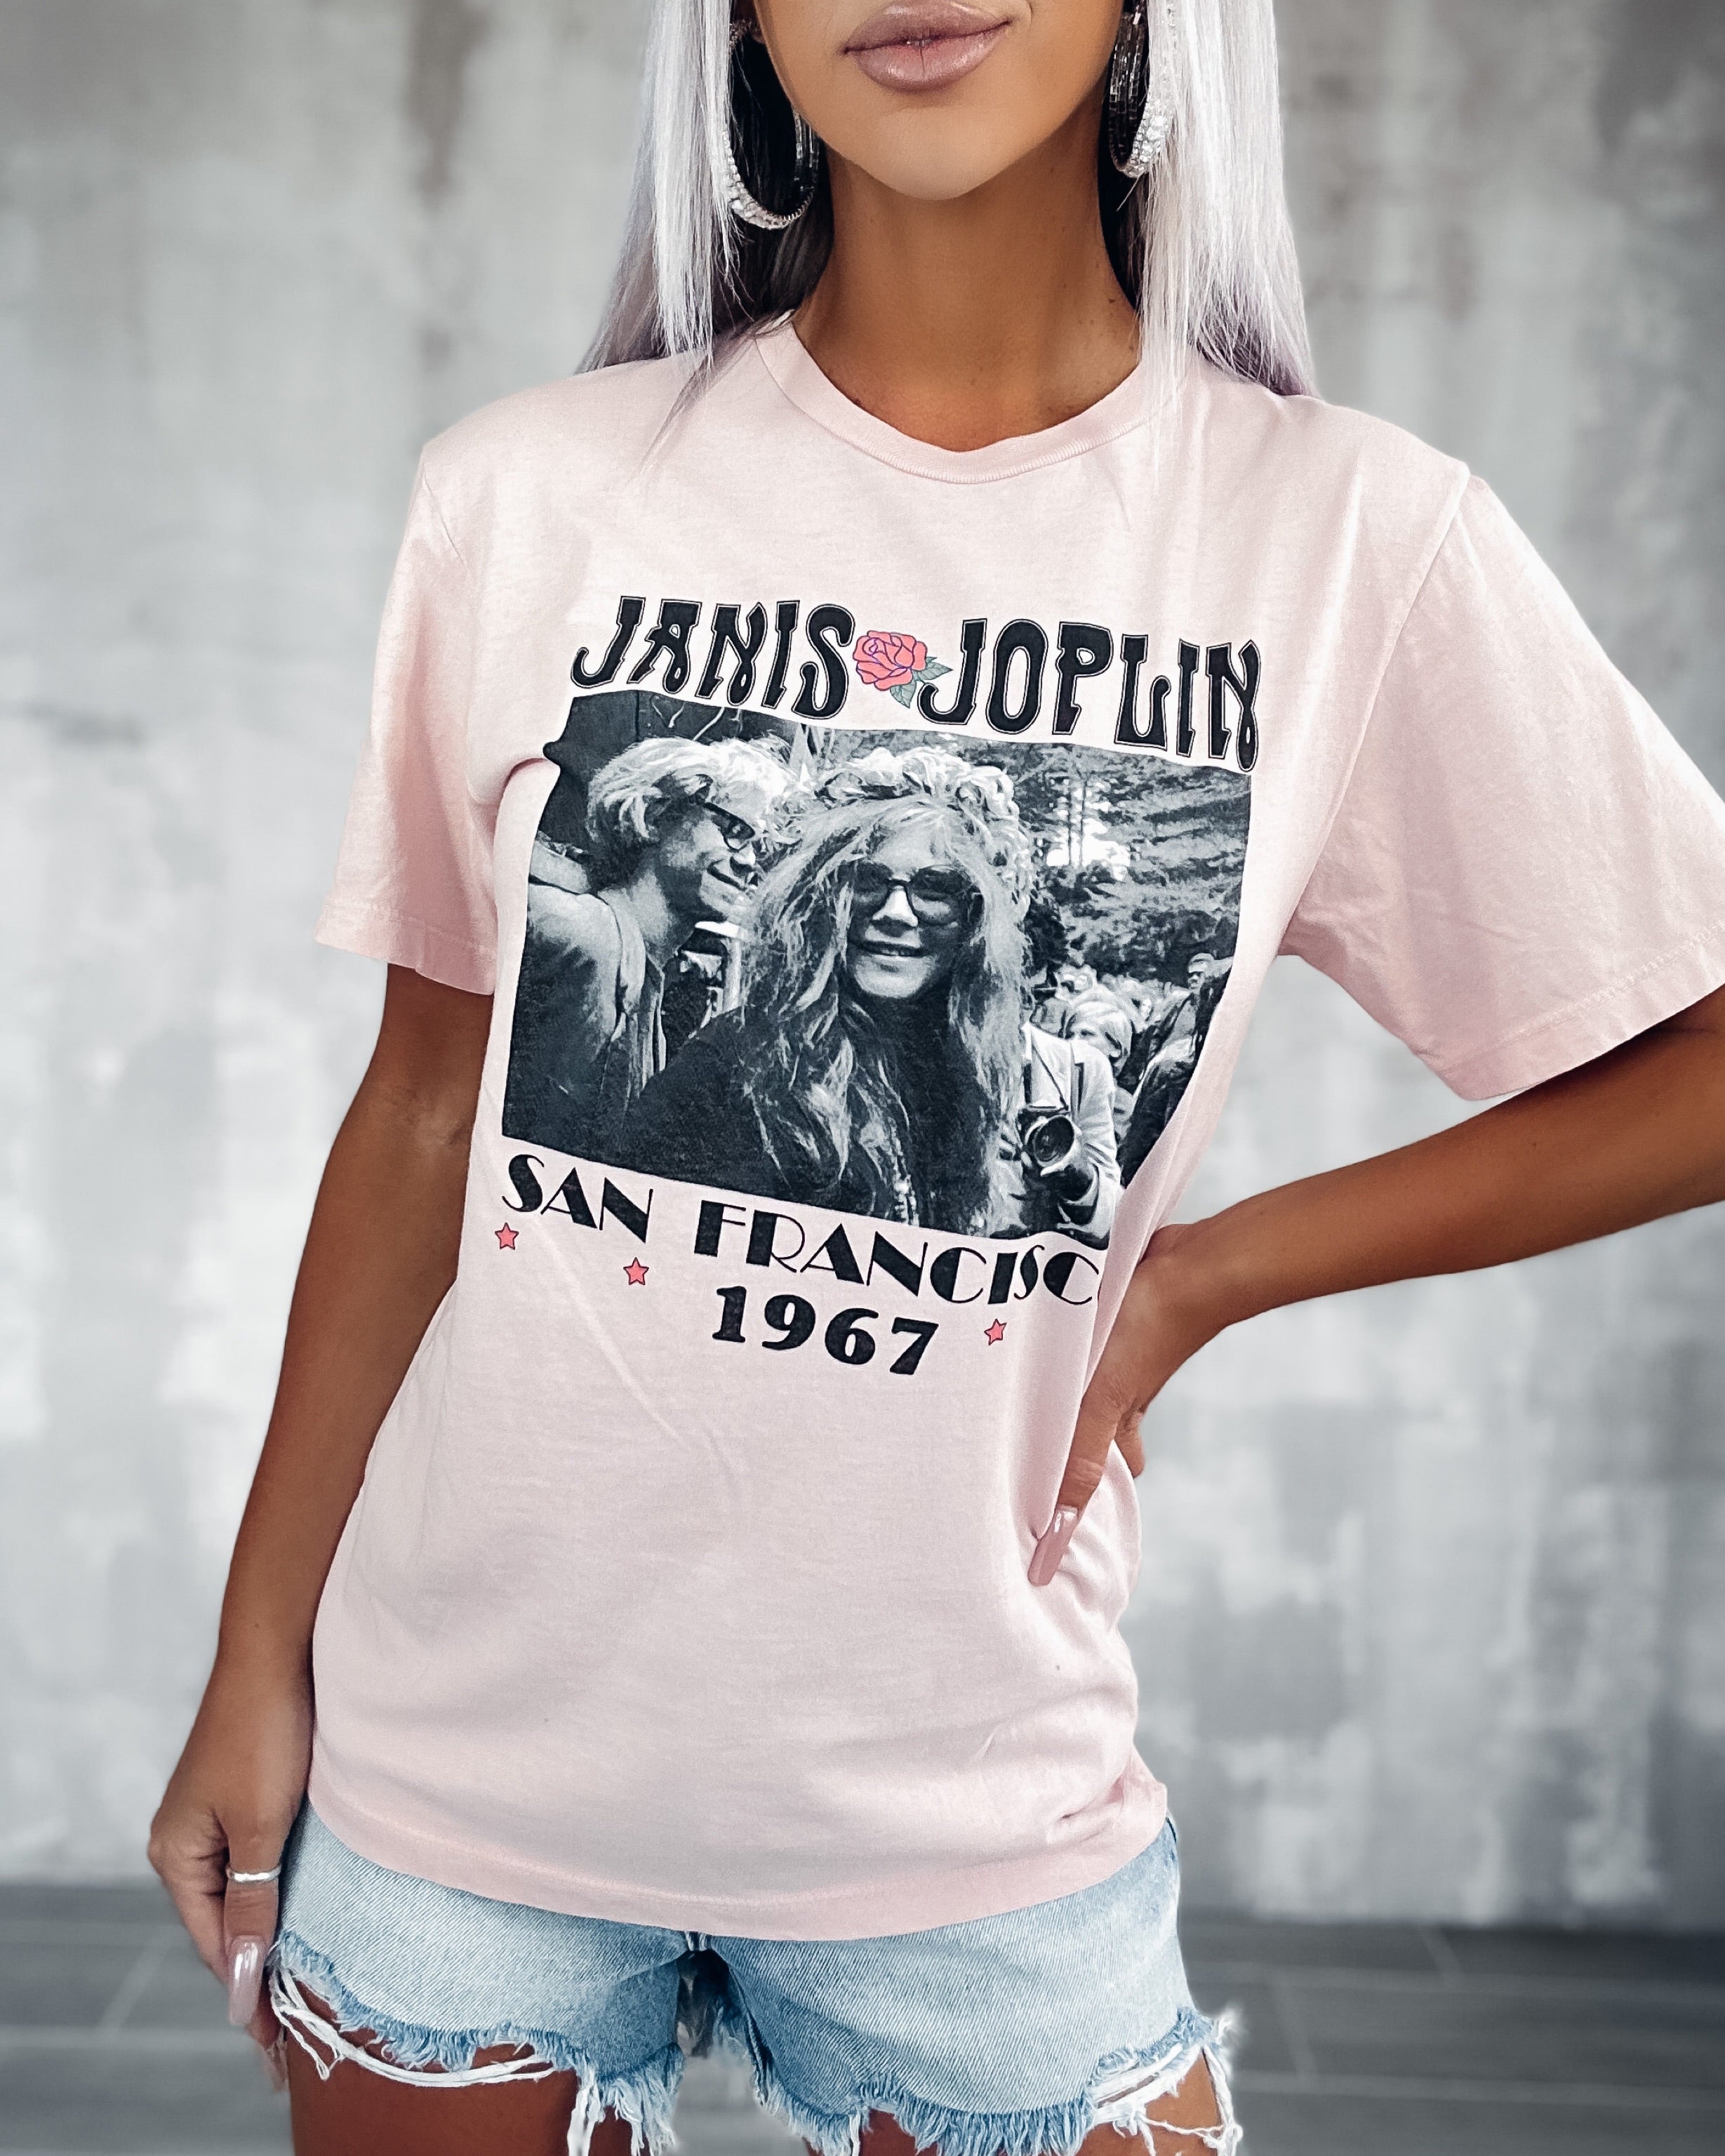 Janis Joplin 1967 Tee - Pink